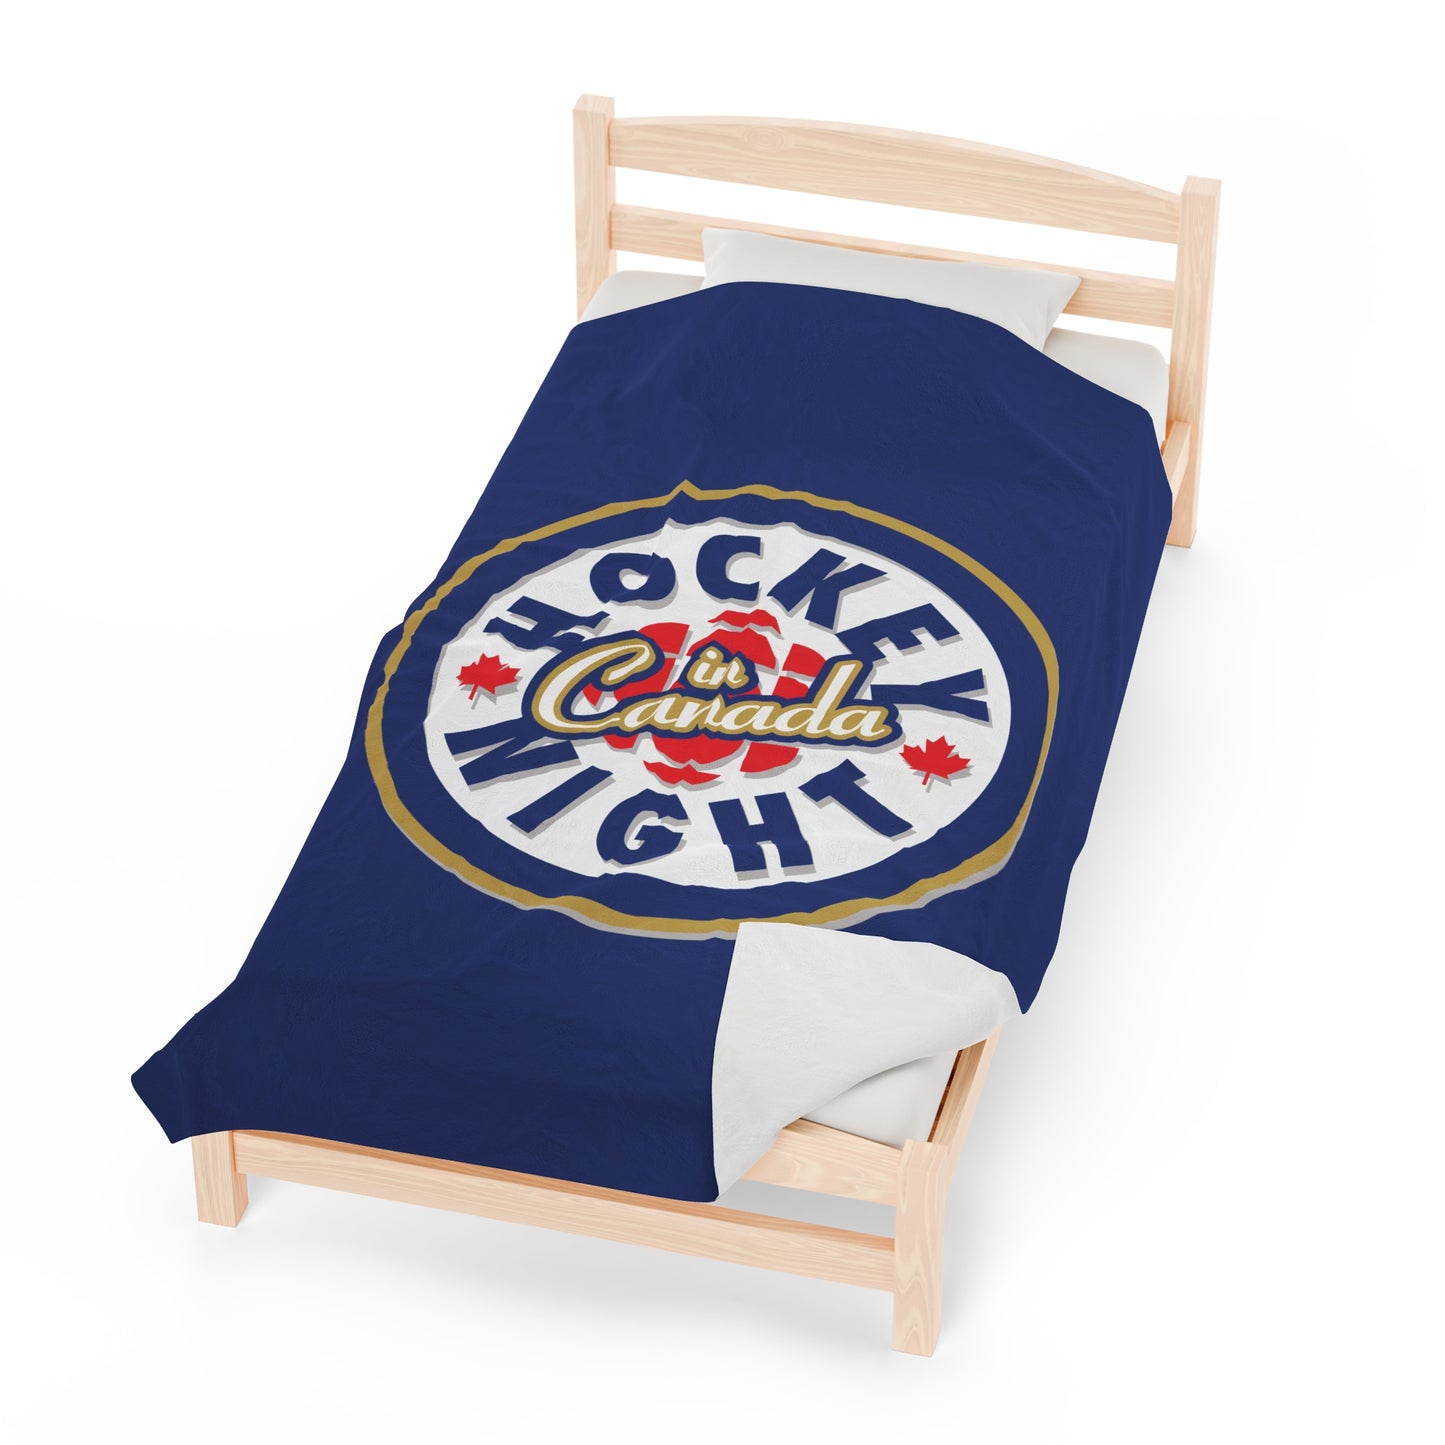 Hockey Night In Canada Blanket, HNIC- Licensed CBC, Blue Front/White Back Velveteen Plush Blanket